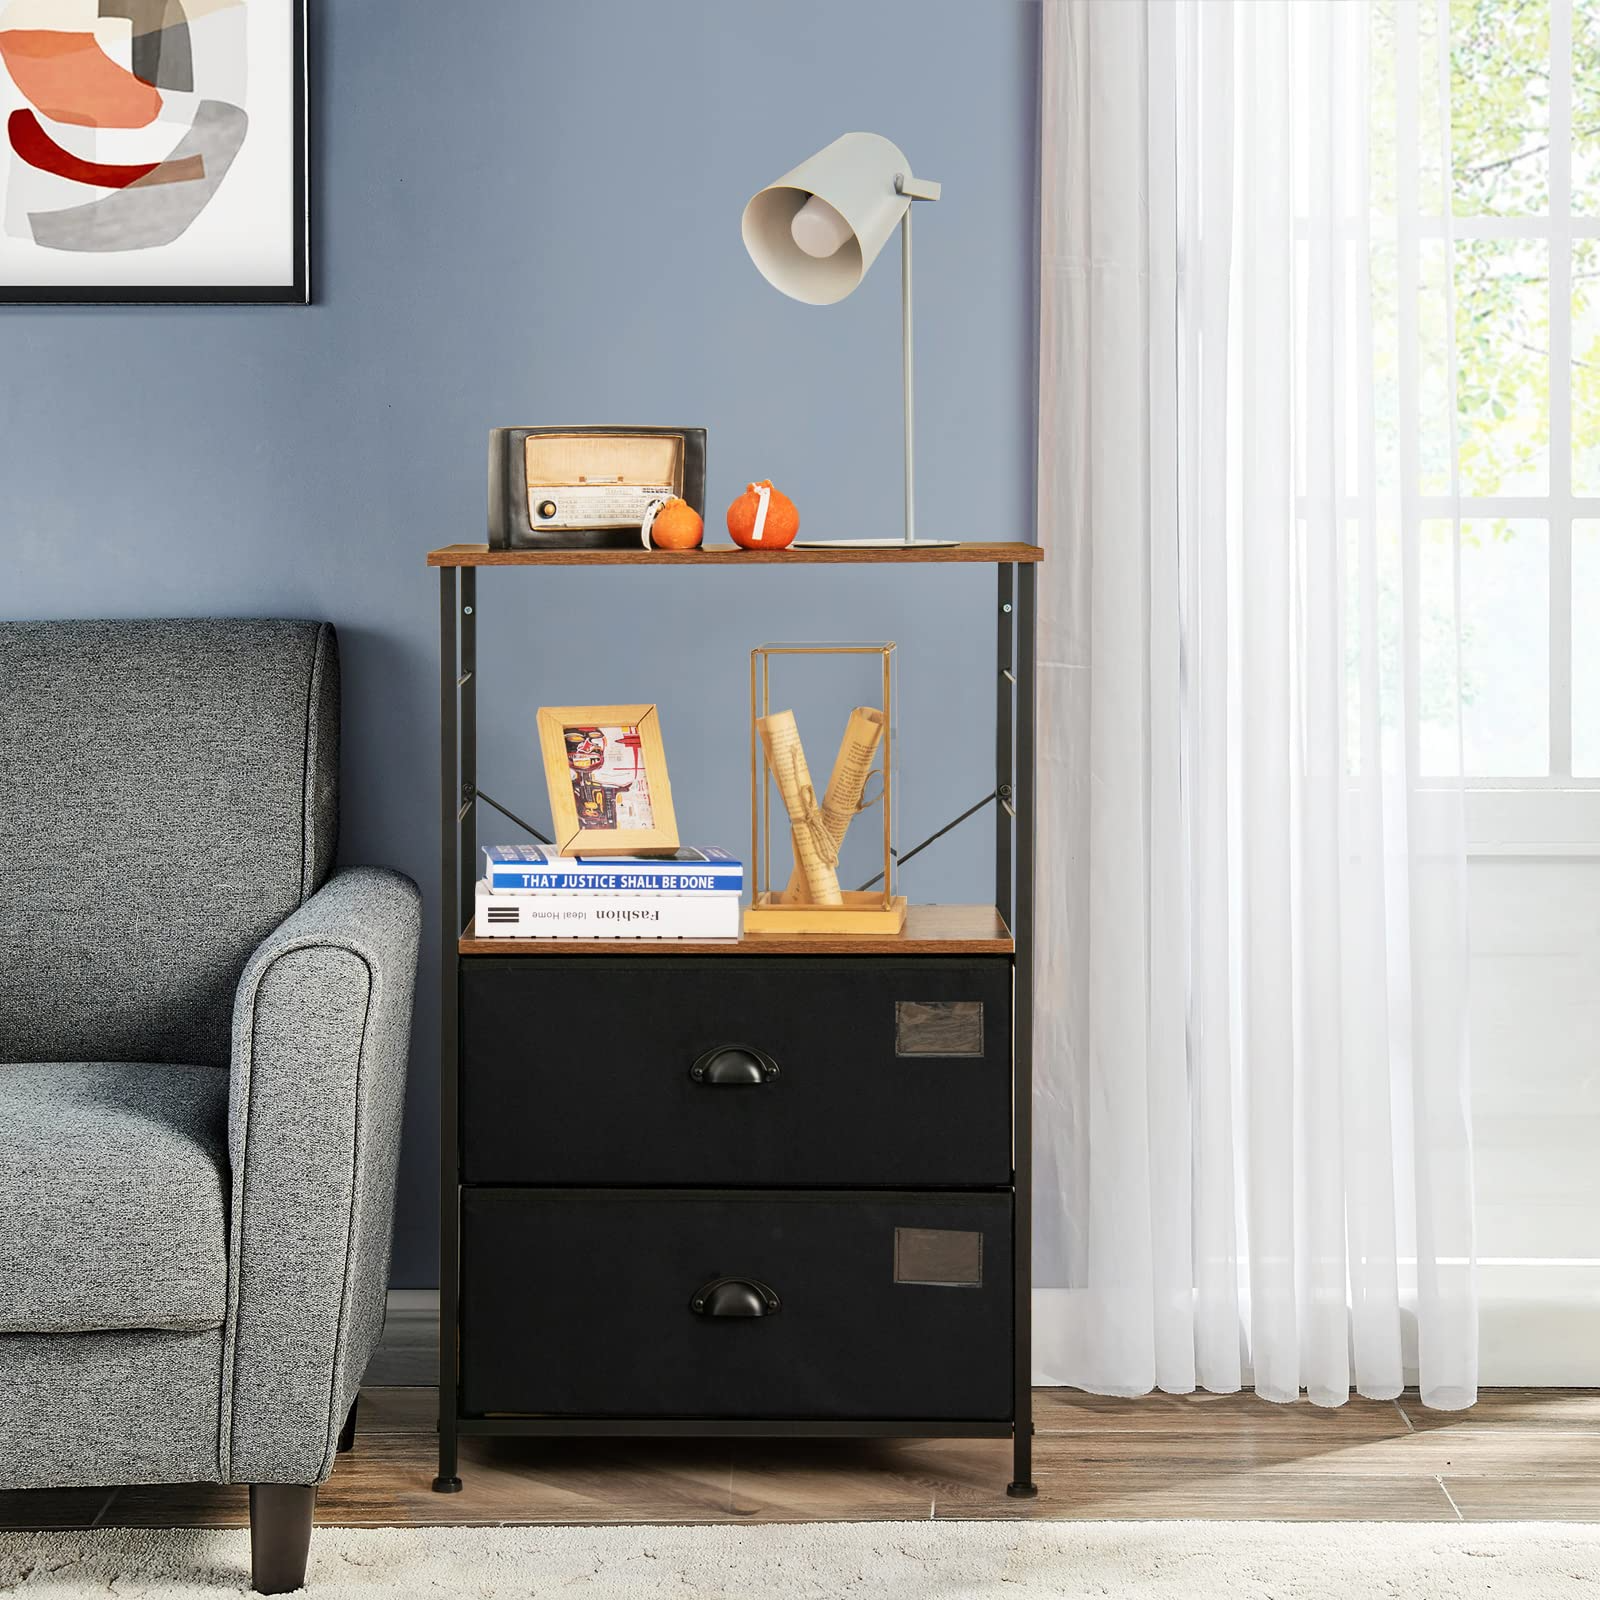 Giantex 2 Drawer Dresser Bedside Table with Storage Shelf, Wooden Top, Metal Frame